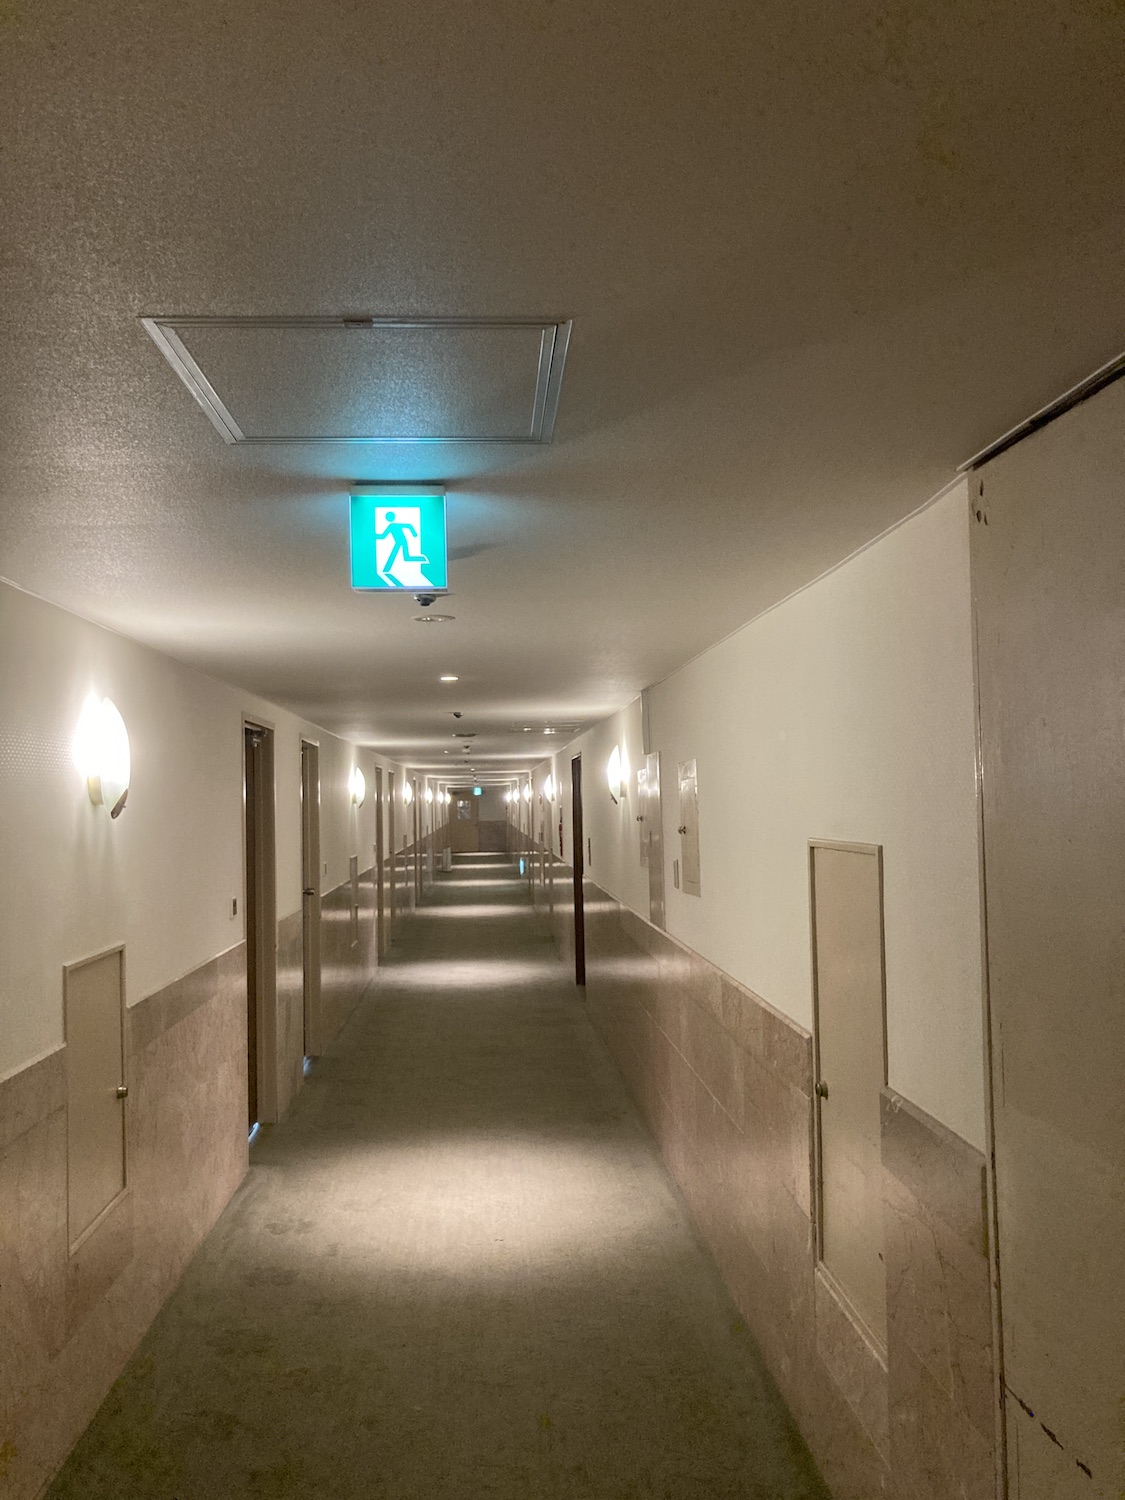 廊下の天井はかなり低い感じがしました。<br>設計的には昔のホテル、といったところでしょうか？